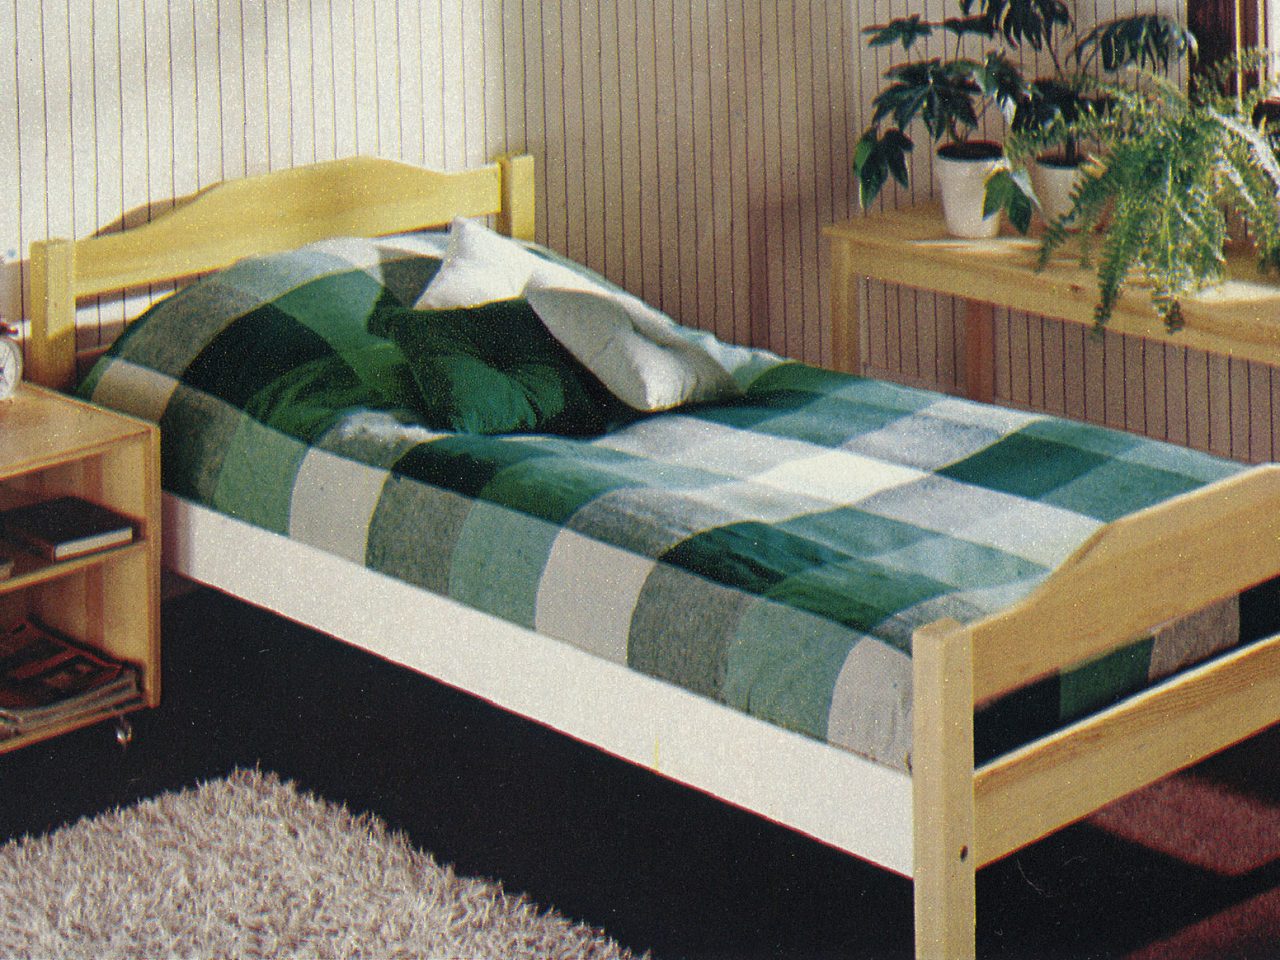 Bild ur IKEA katalogen 1977, furusäng bäddad med grönrutigt överkast, INDUS, på golvet en vit ryamatta.